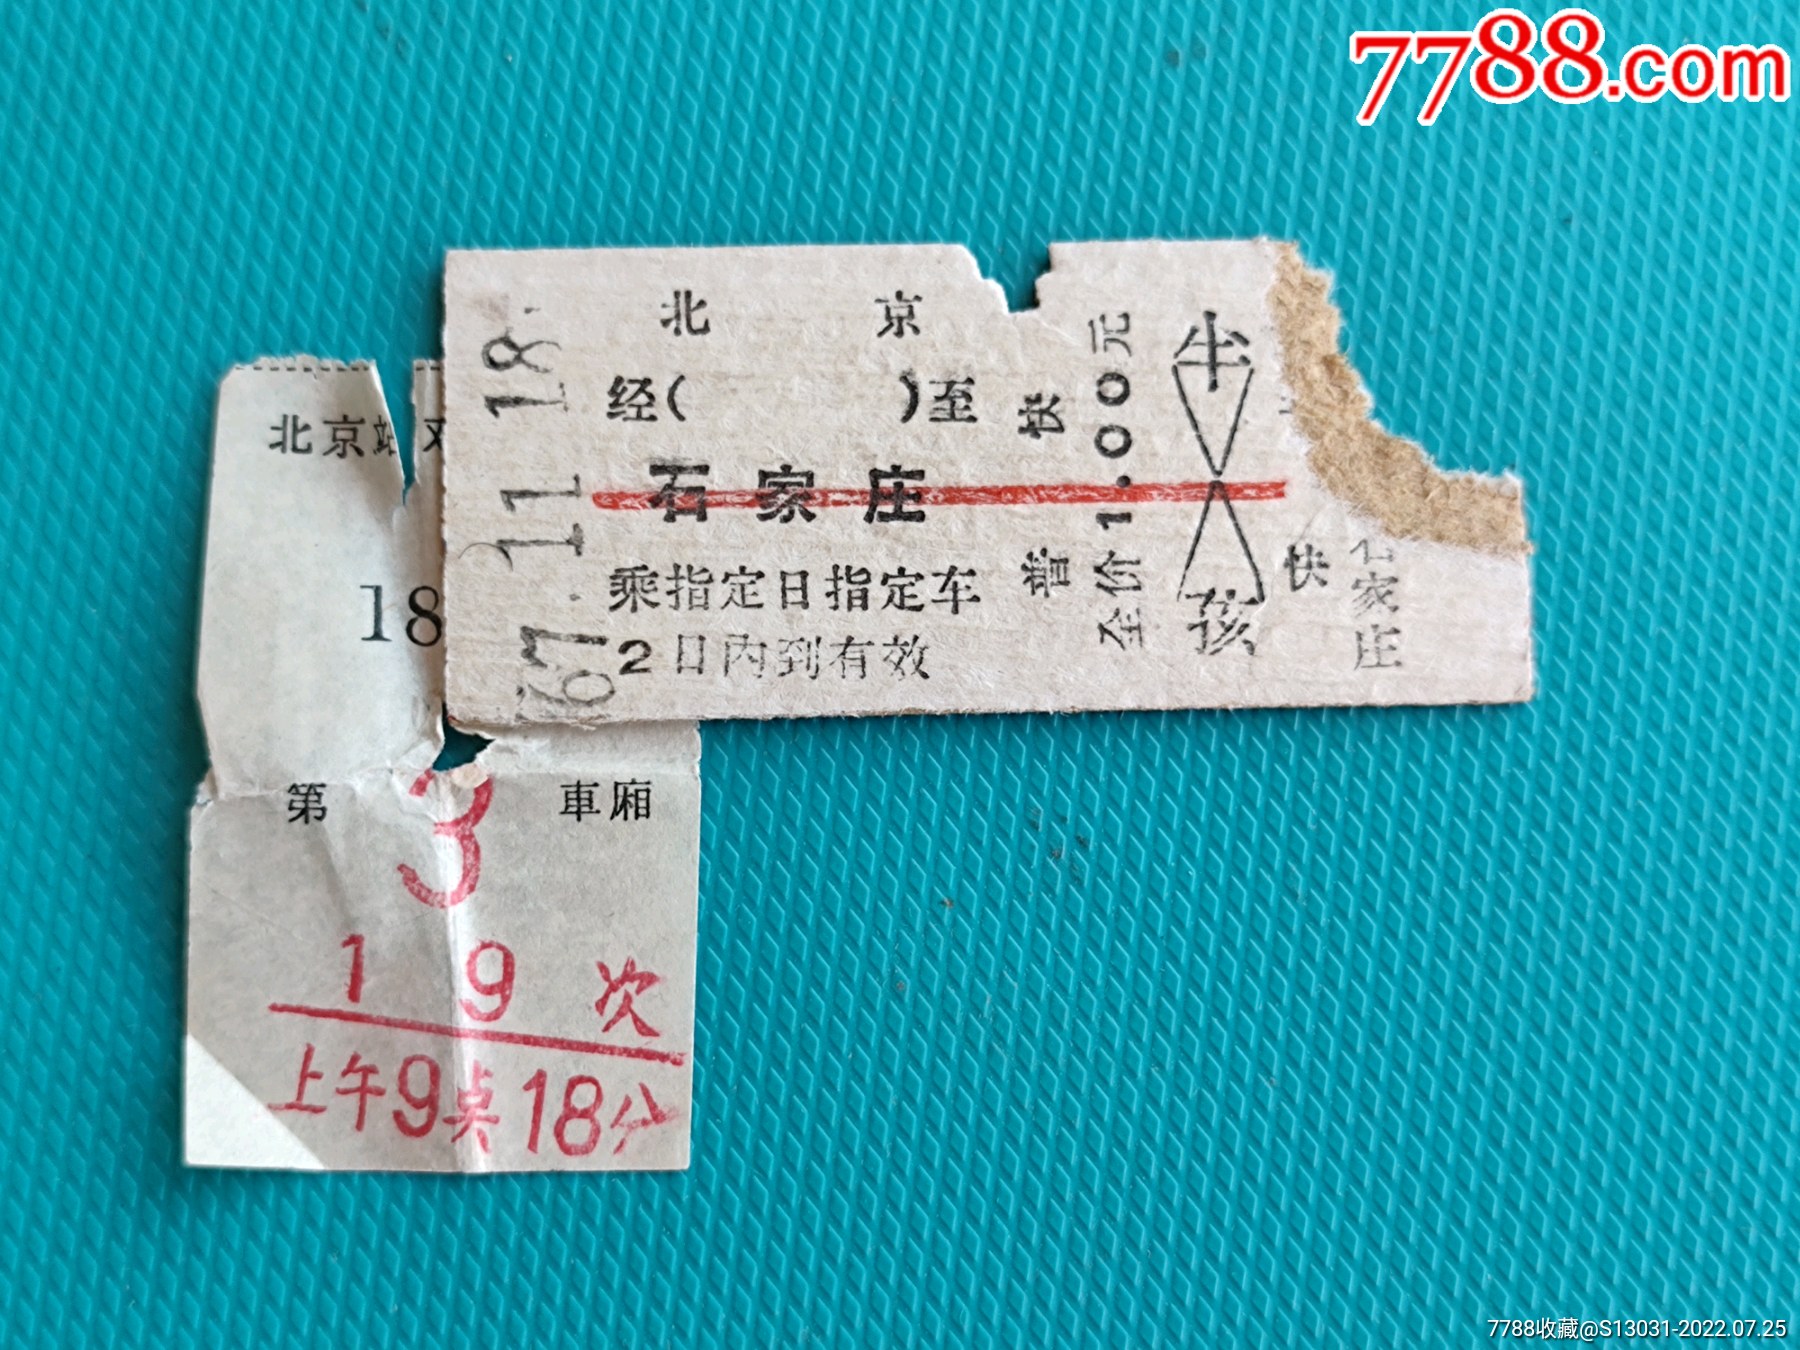 蓝黄色DIY火车票票根手绘旅游分享中文微信朋友圈